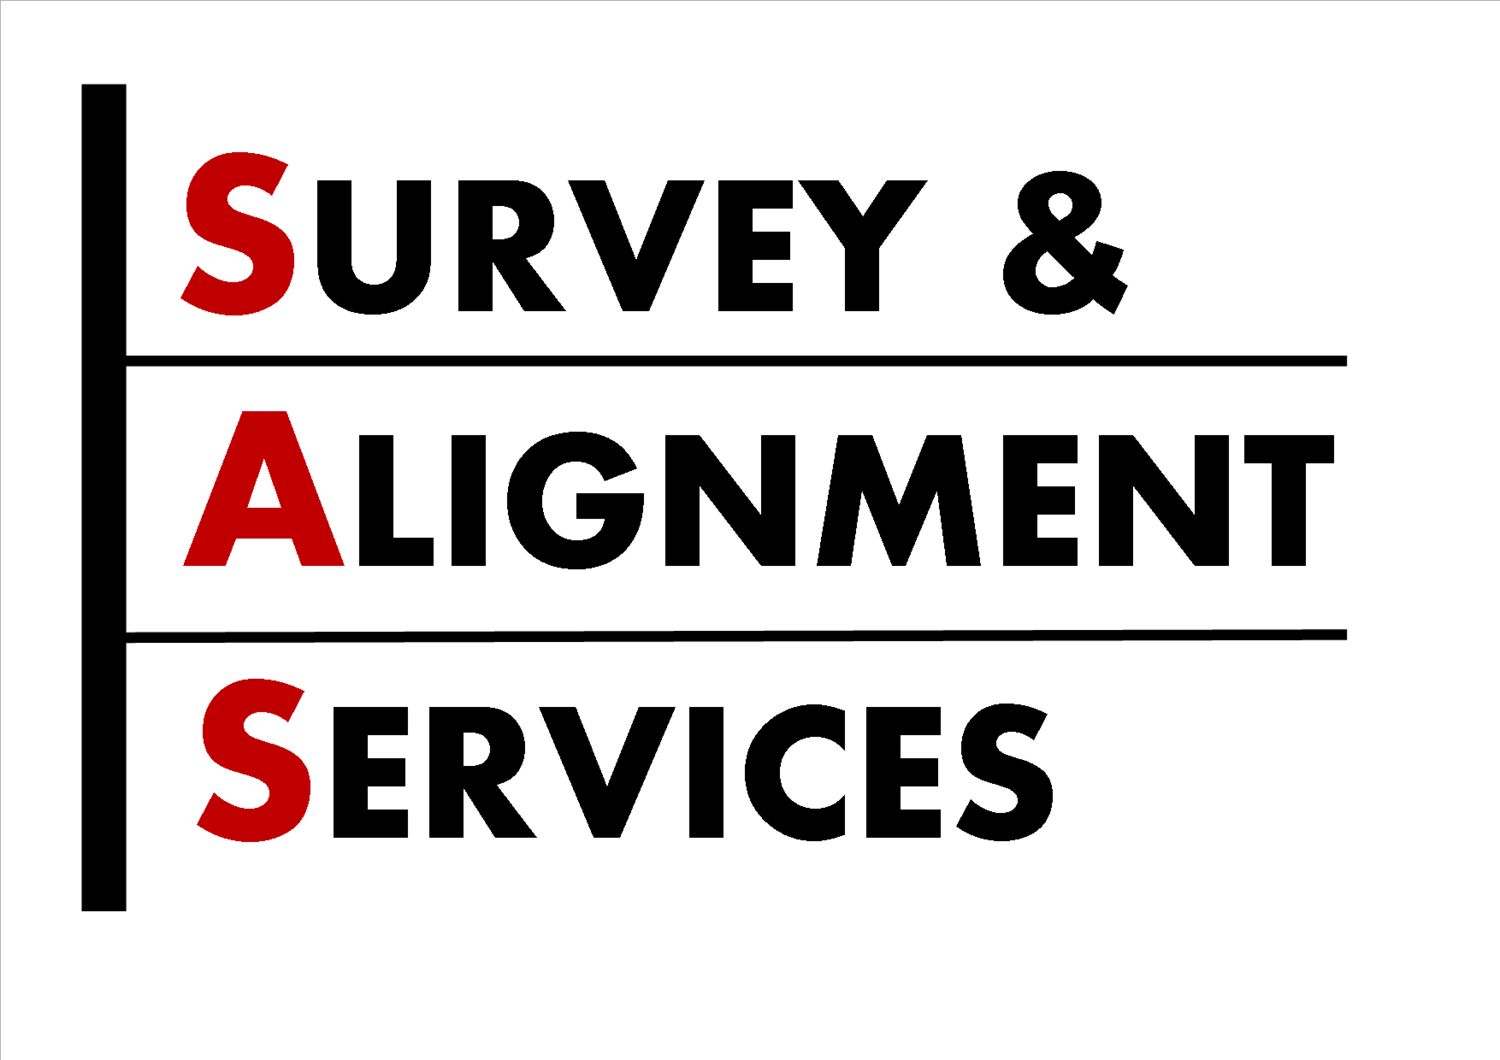 Survey & Alignment Services